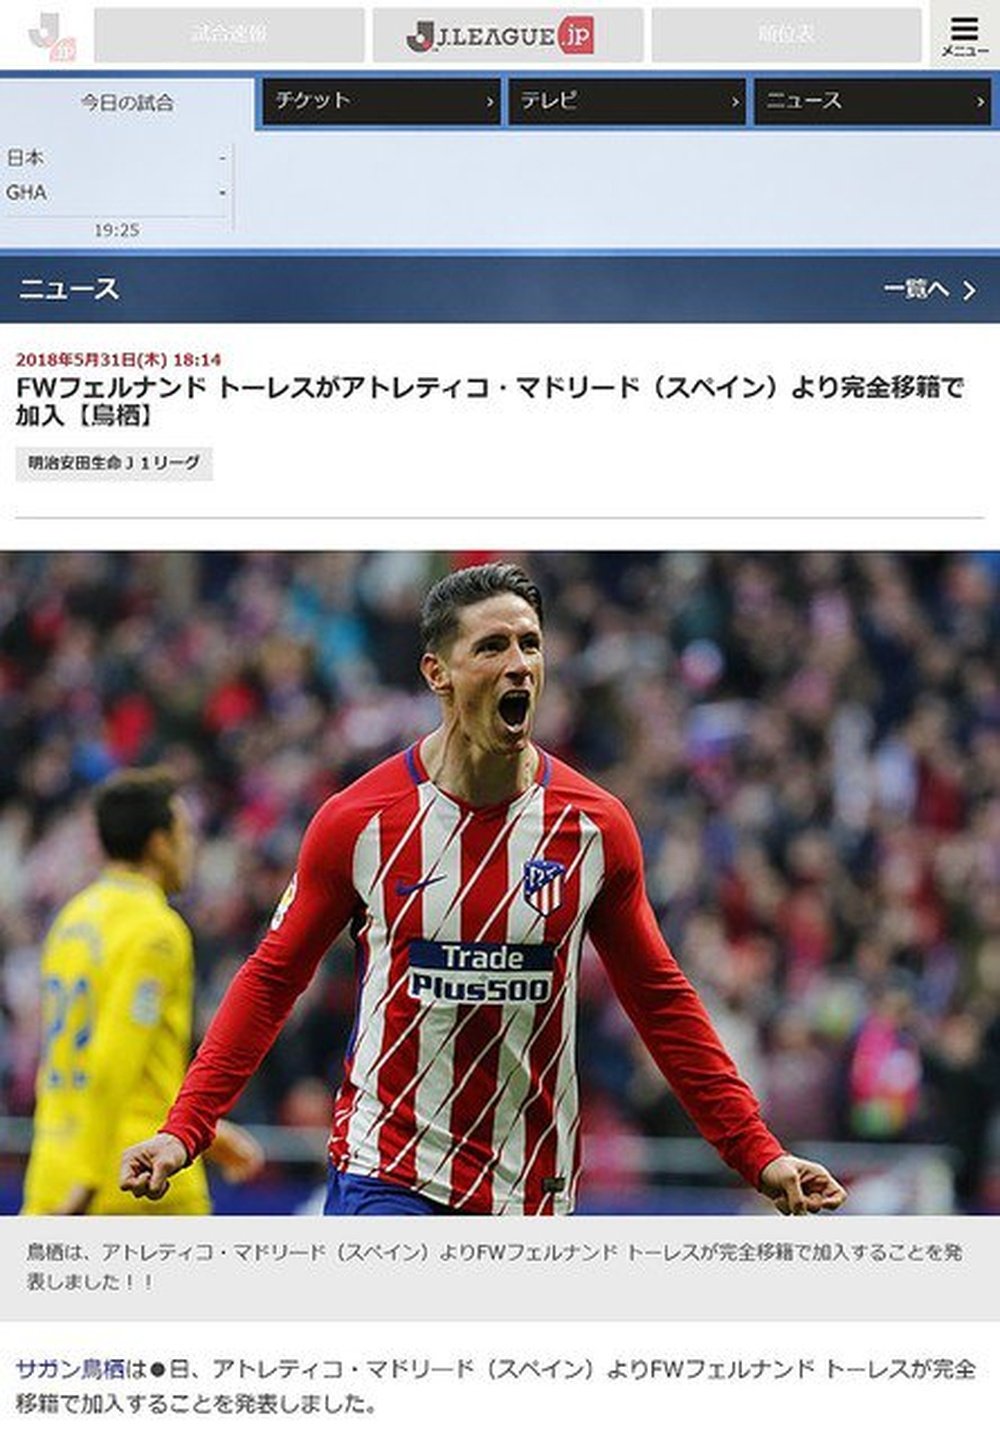 Image du site du championnat japonais qui confirme le transfert de Torres. JLeagueJP